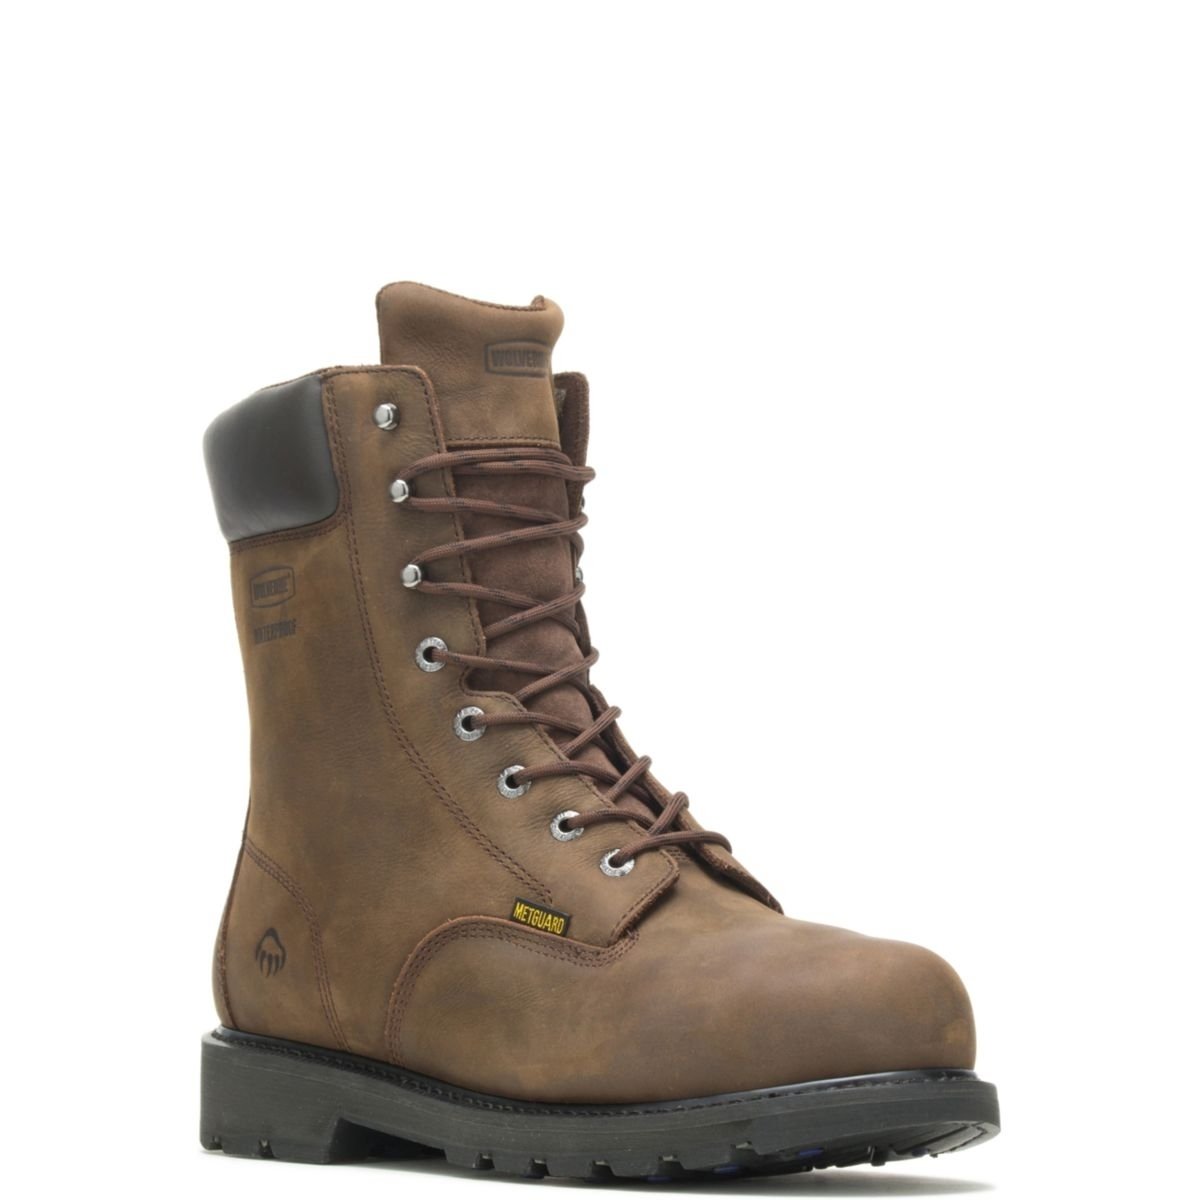 WOLVERINE Men's McKay 8 Waterproof Steel Toe Work Boot Brown - W05680 10 BROWN - BROWN, 10.5